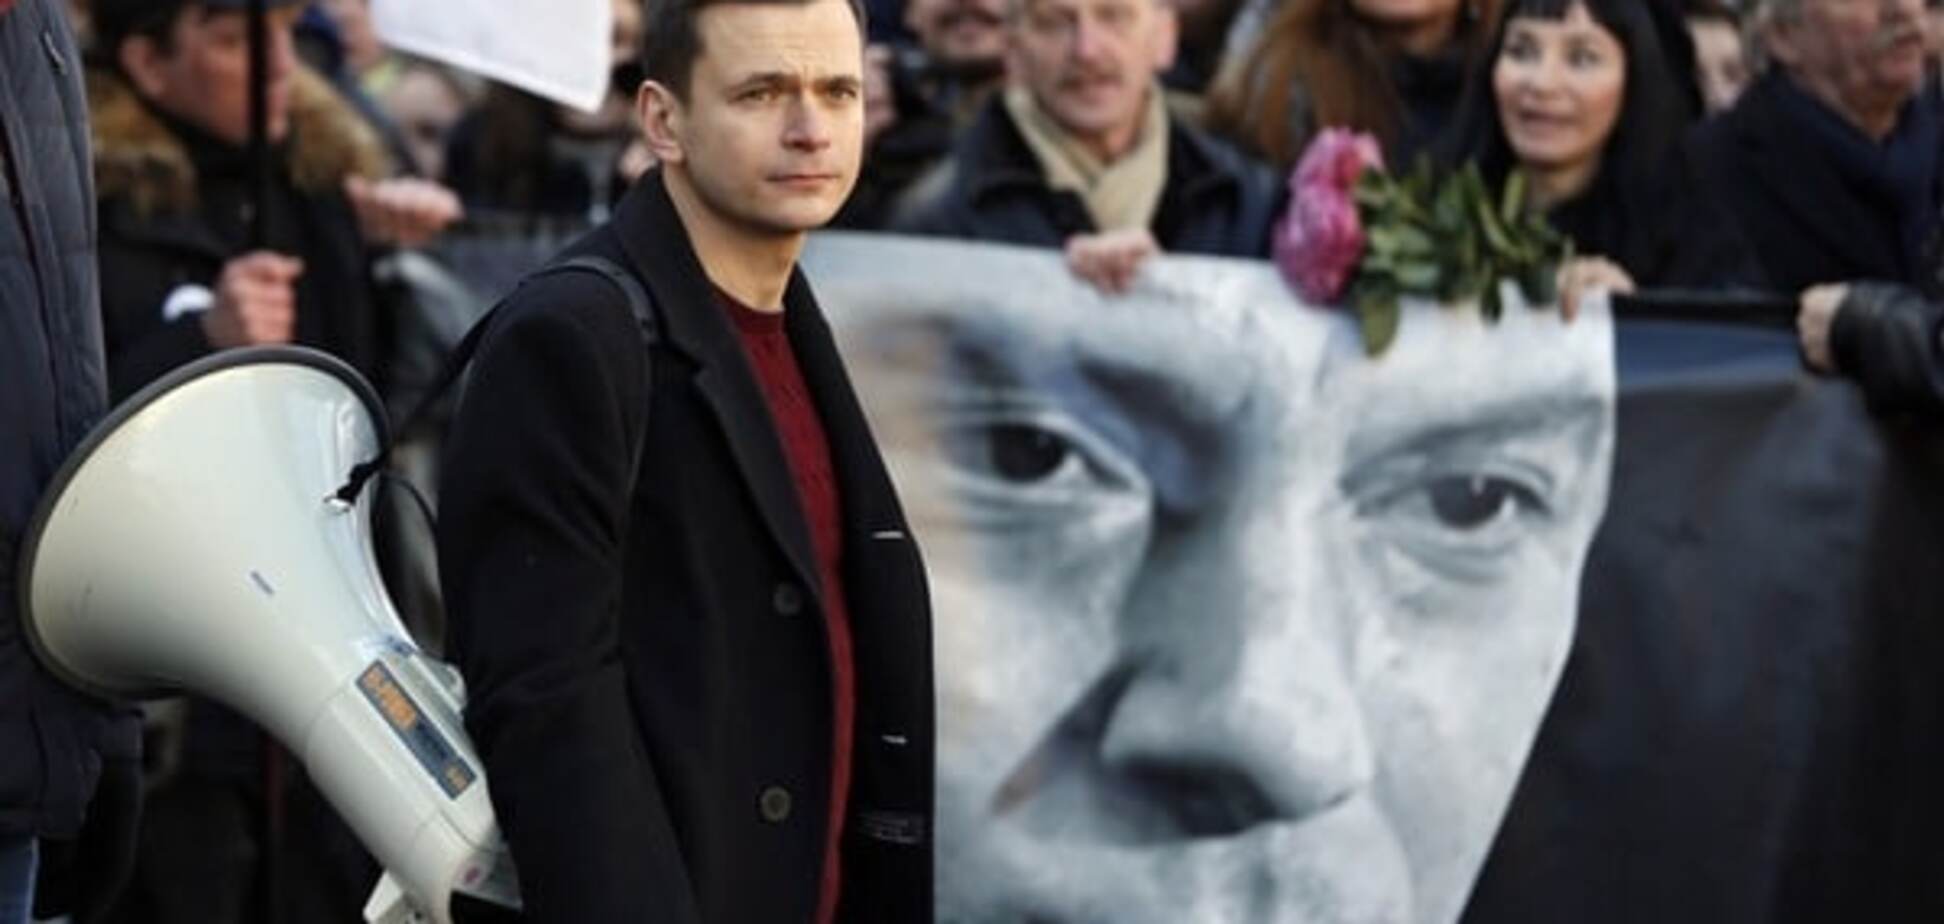 Заказчики убийства Немцова остаются на свободе и могут убивать и далее - Яшин